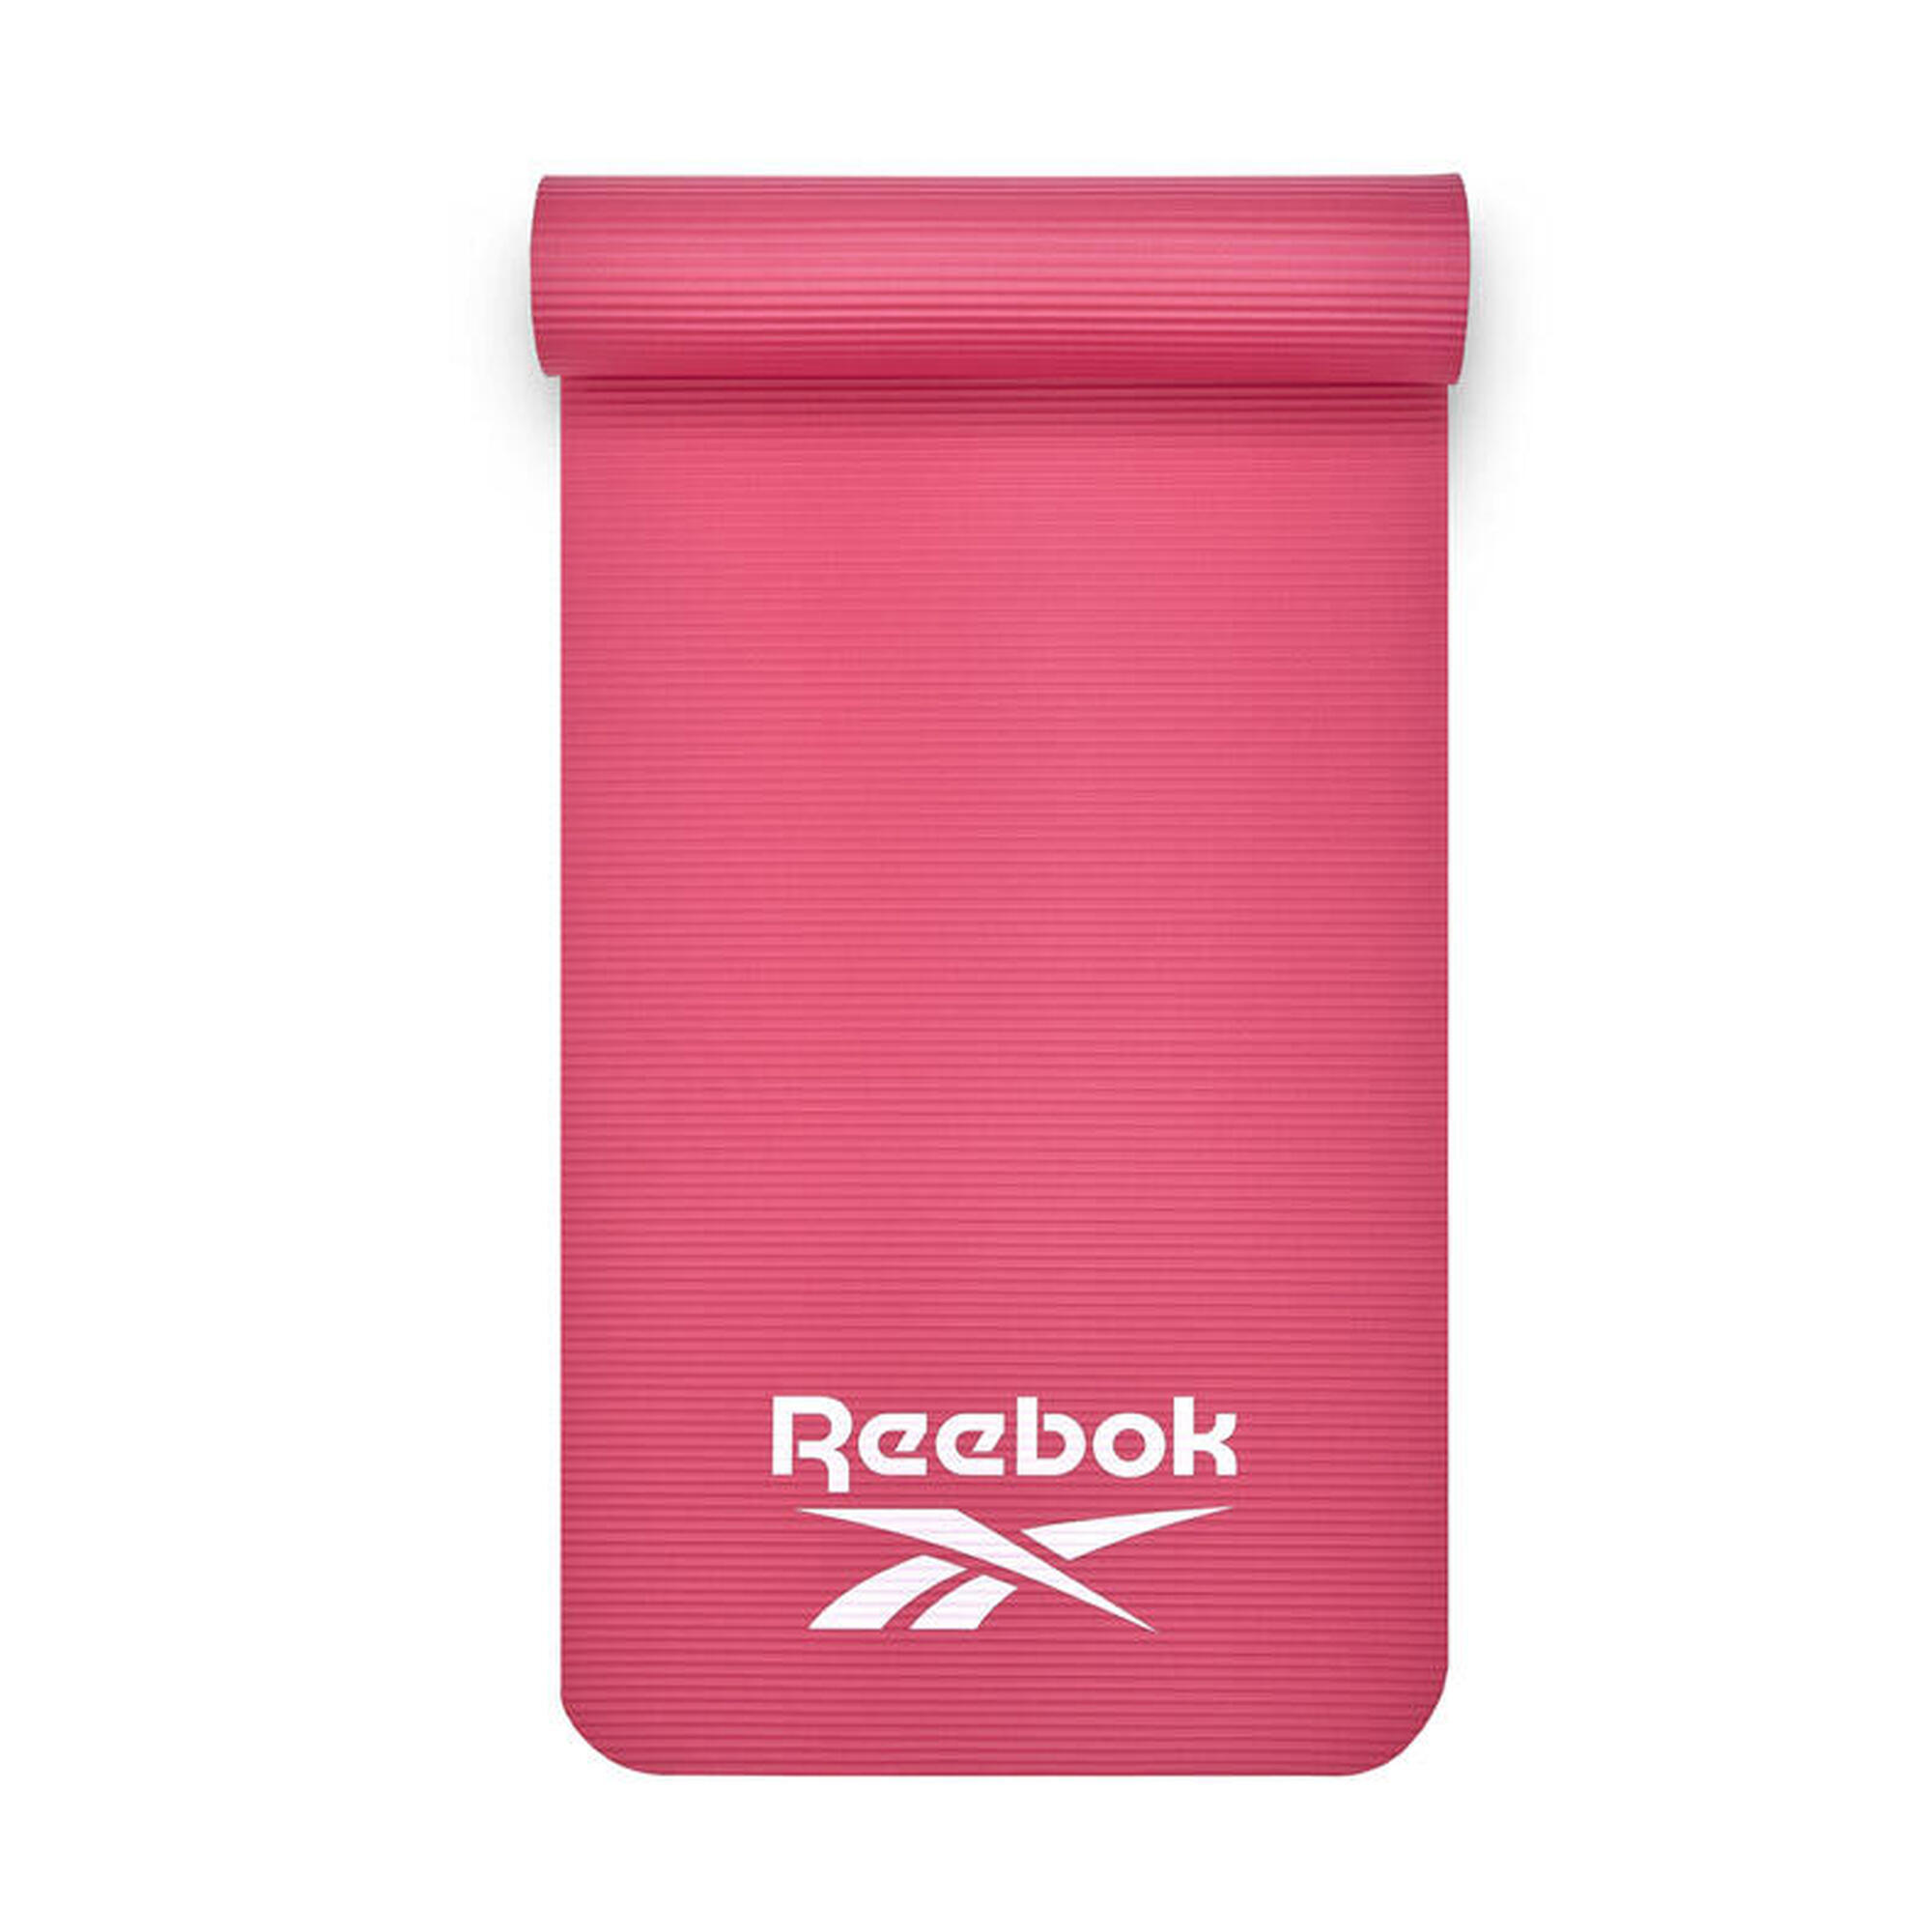 Tapete de Fitness Reebok - 10mm - Rosa